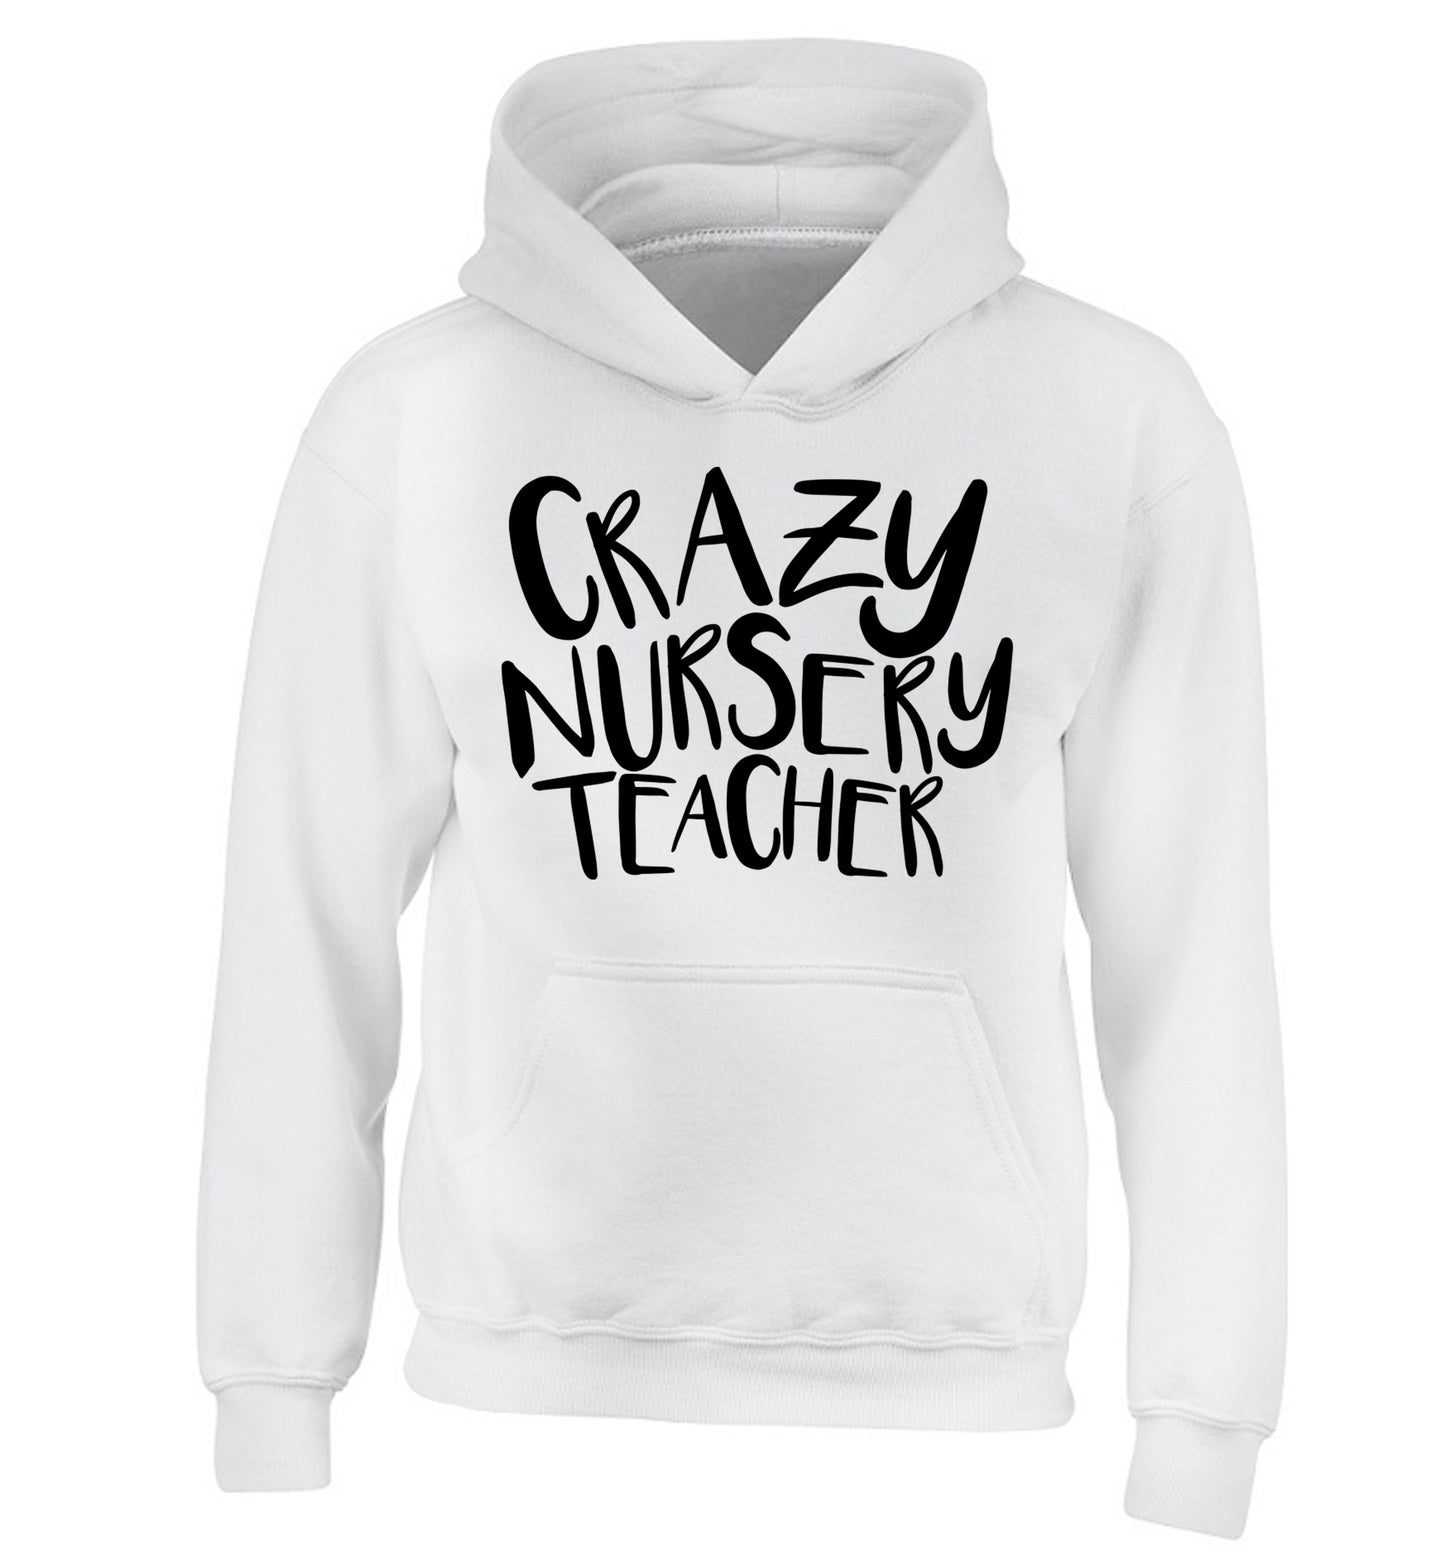 Crazy nursery teacher children's white hoodie 12-13 Years